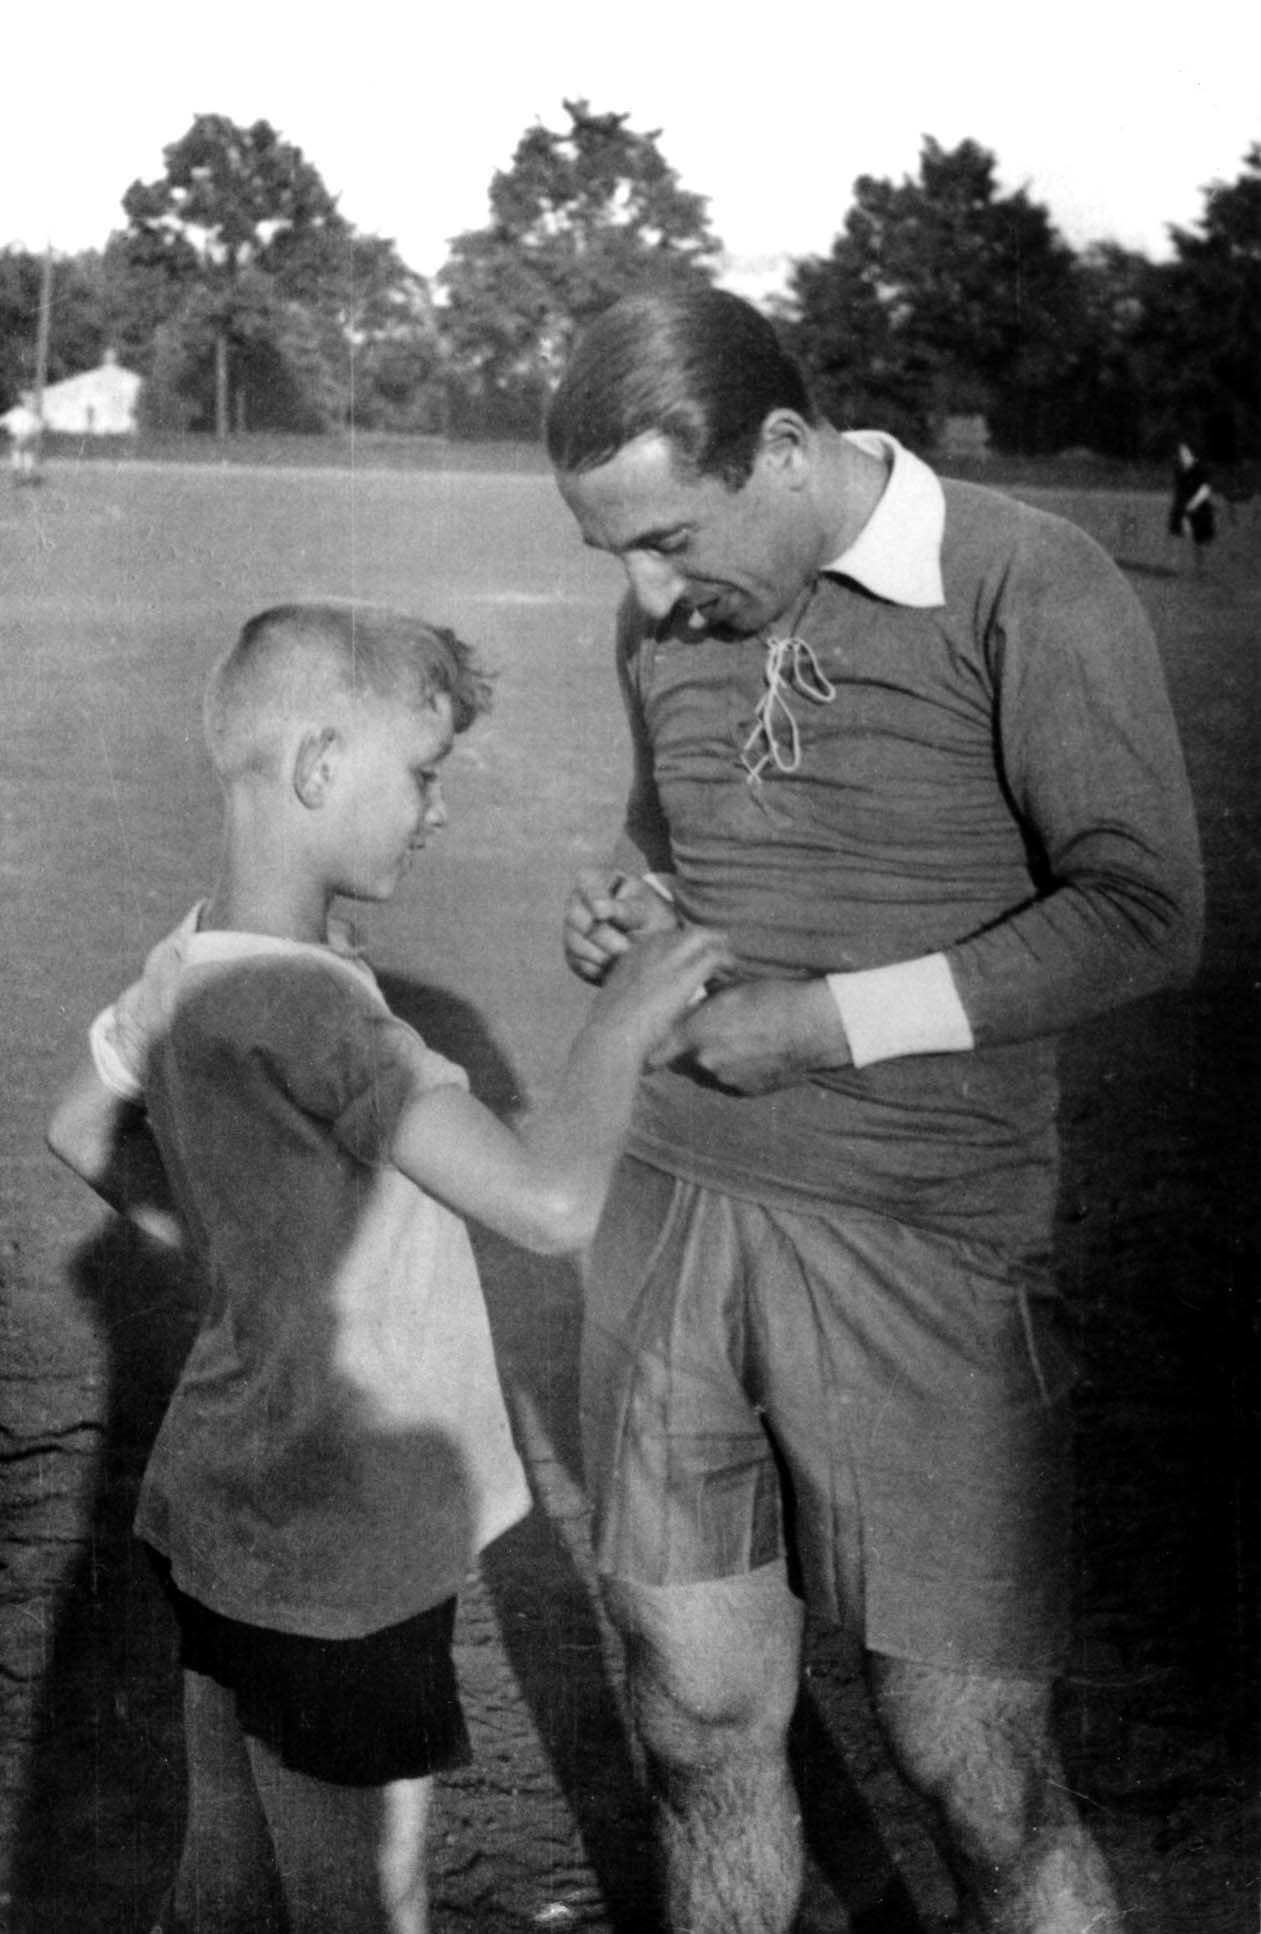 Berlín, Alemania. El tenista judío Daniel Prenn durante una actividad deportiva del movimiento "Bar Kojba", 1930